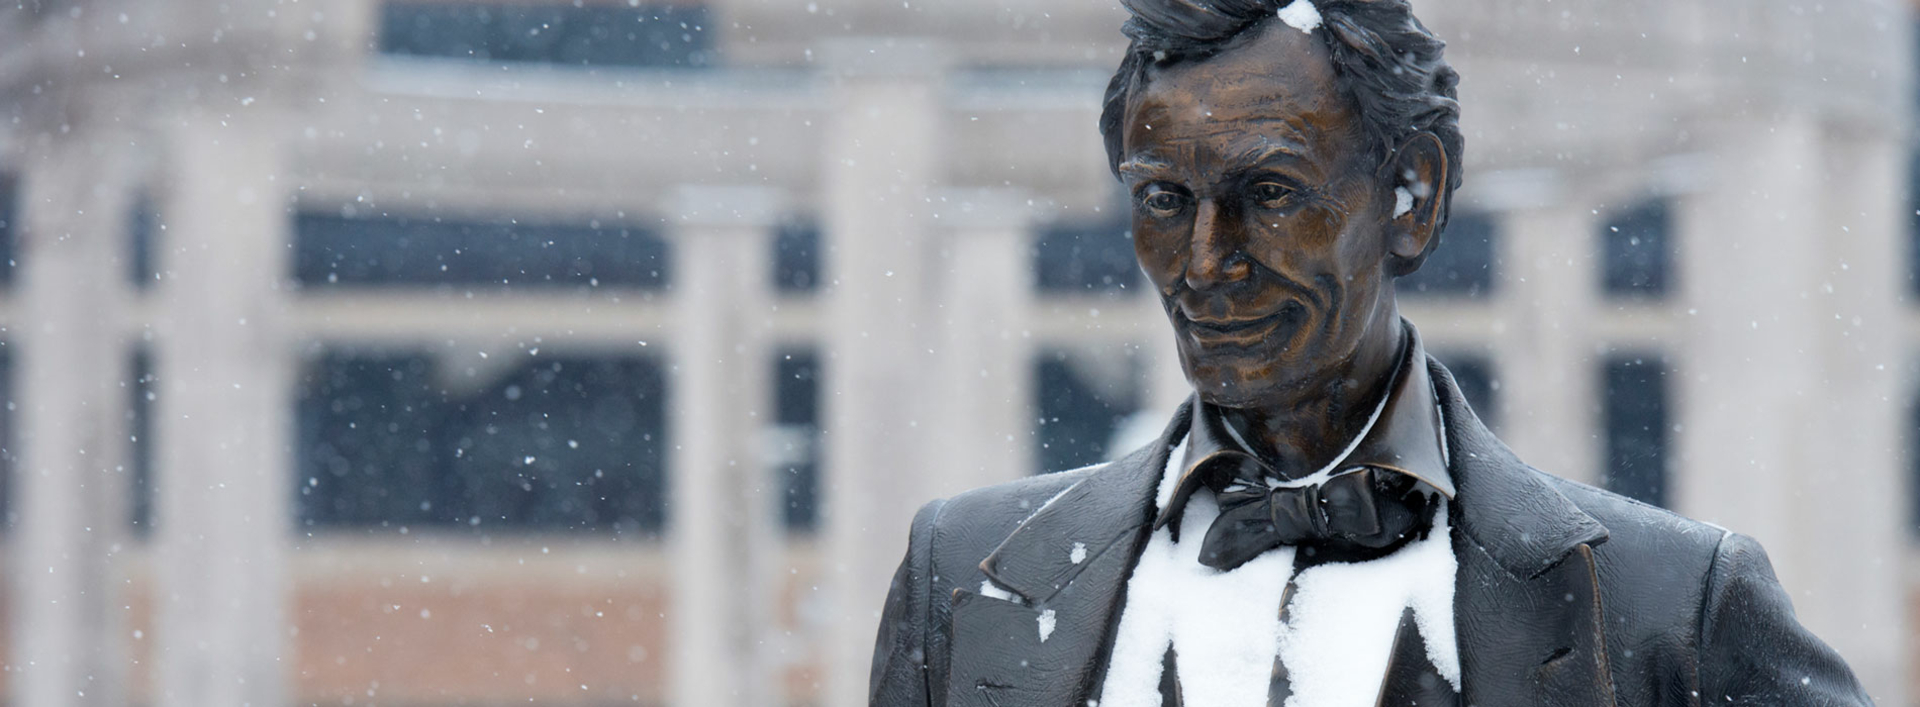 Abe Lincoln statue in winter